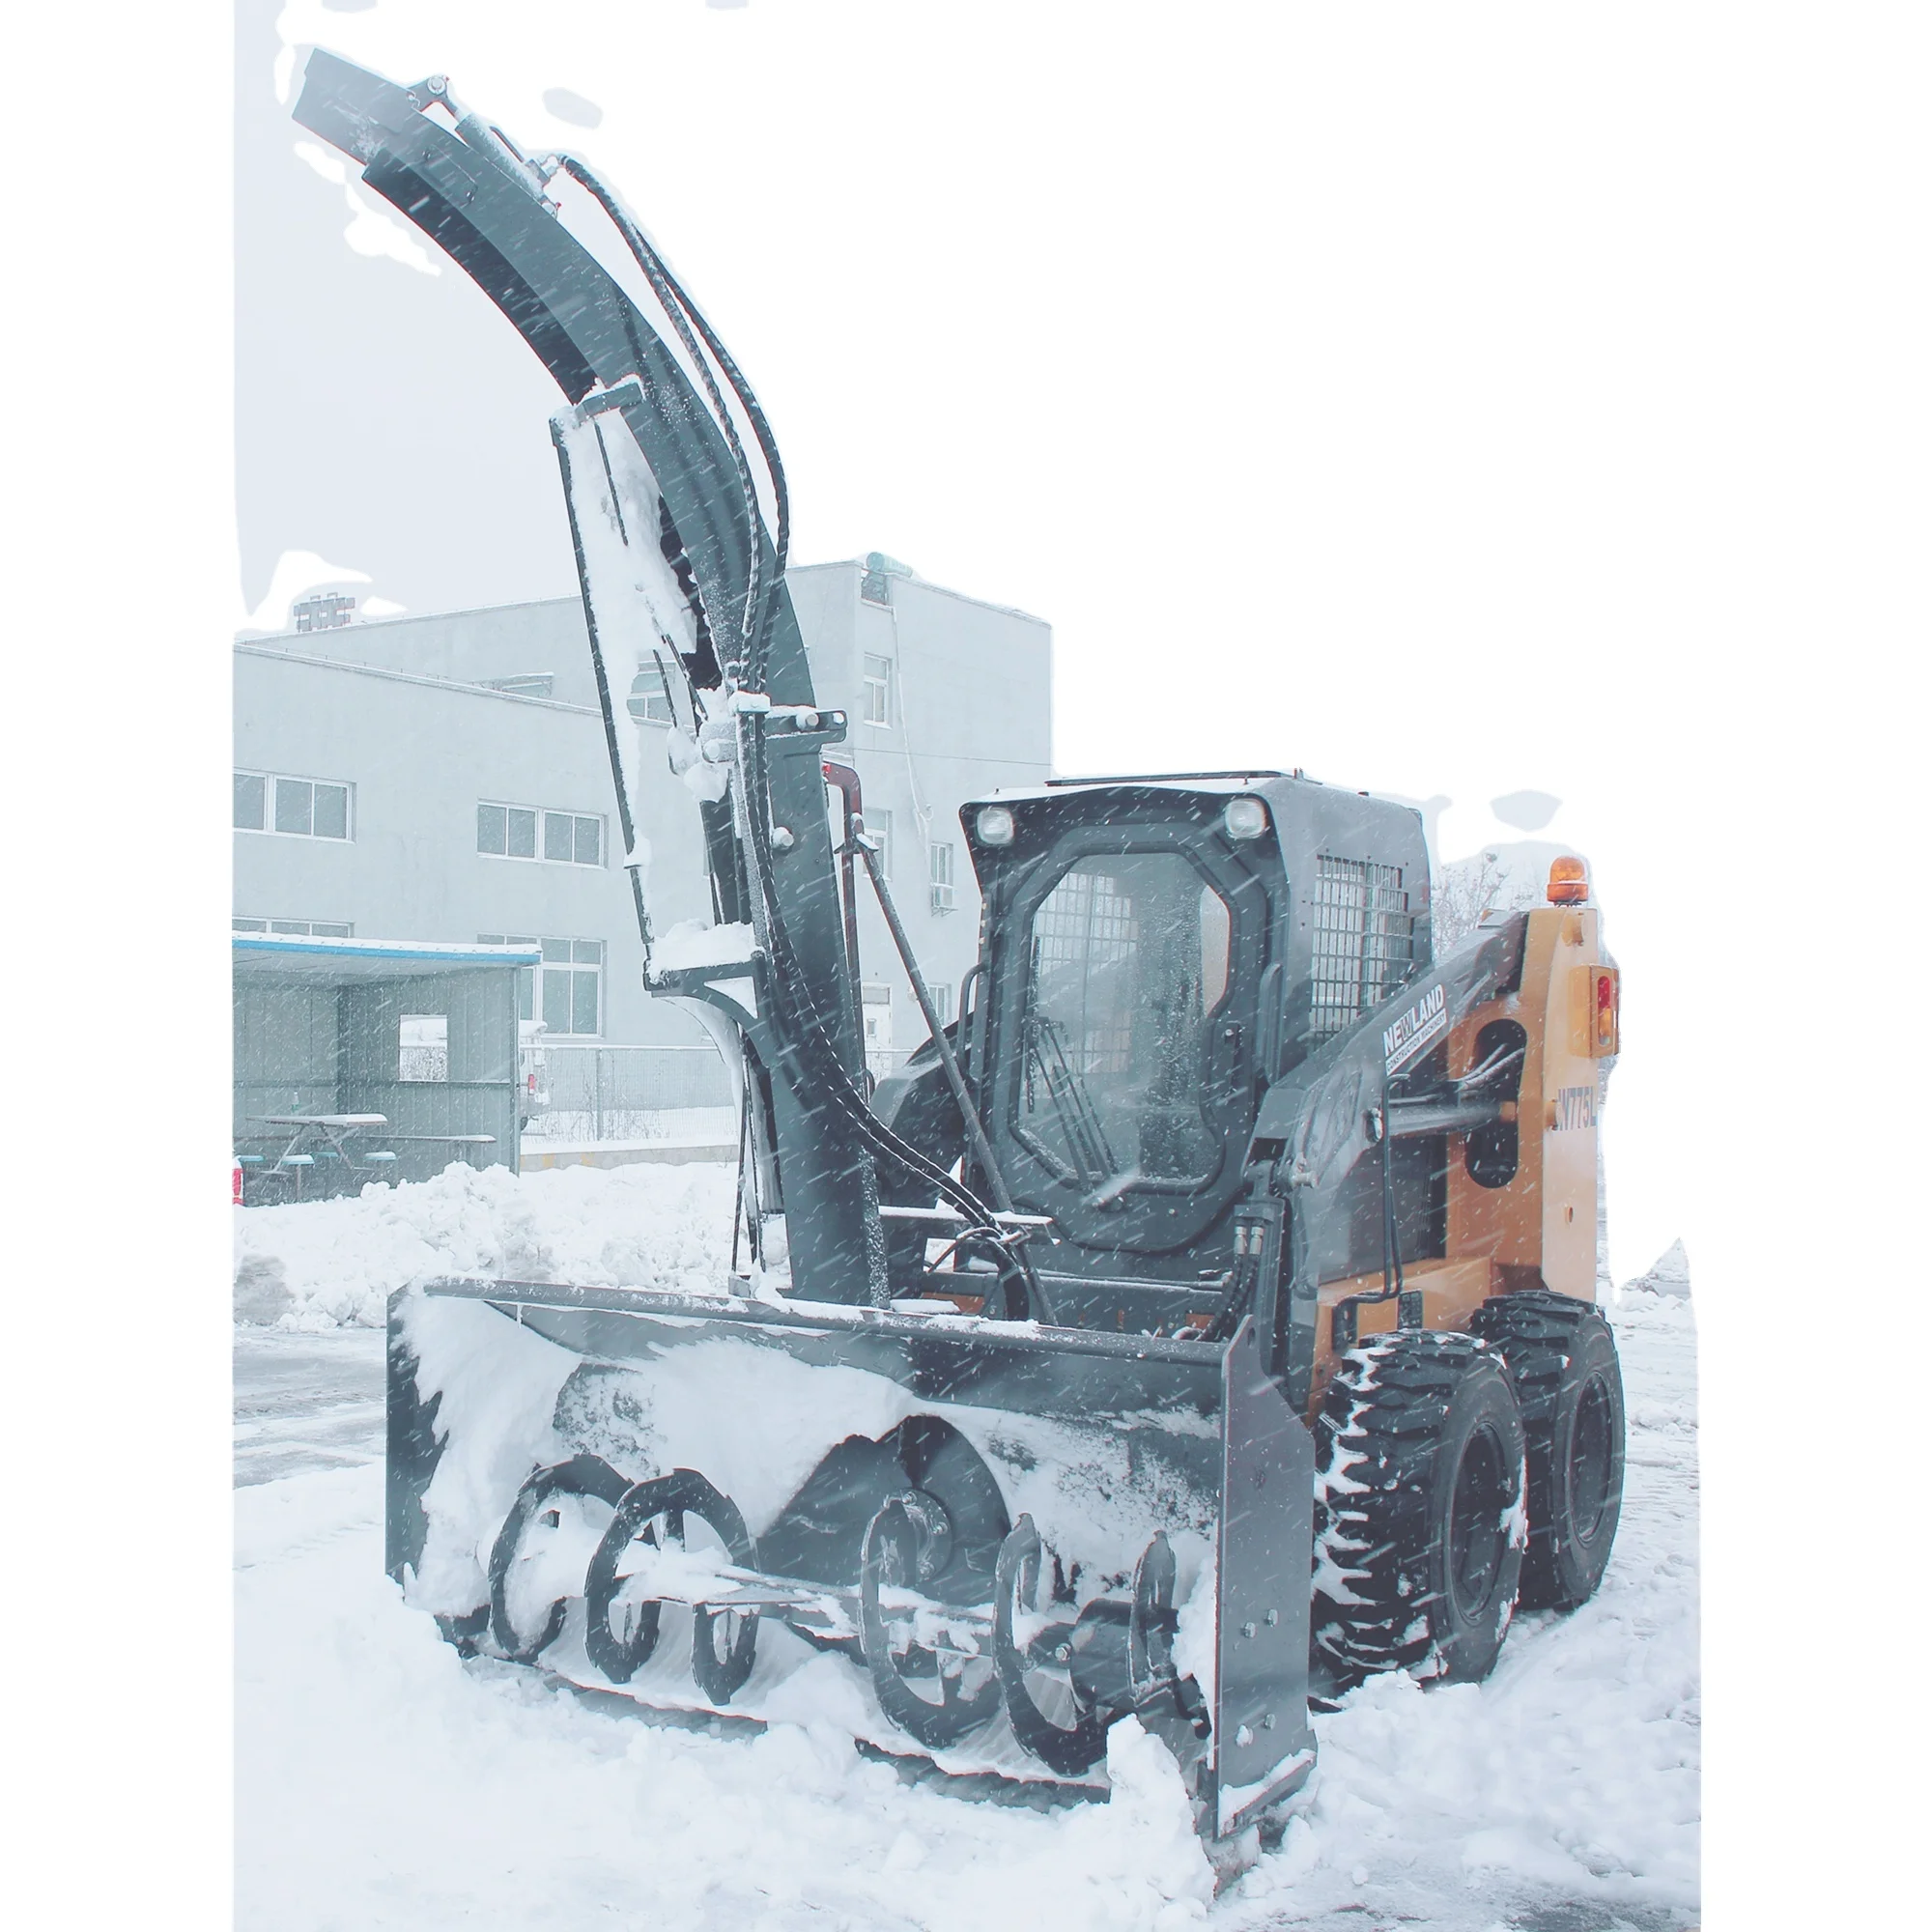 スキッドステアローダー用の経済的な除雪機除雪道路保守エンジニアリング機械 Buy スキッドローダー除雪機 除雪機gardenpro 除雪機コードレス Product On Alibaba Com